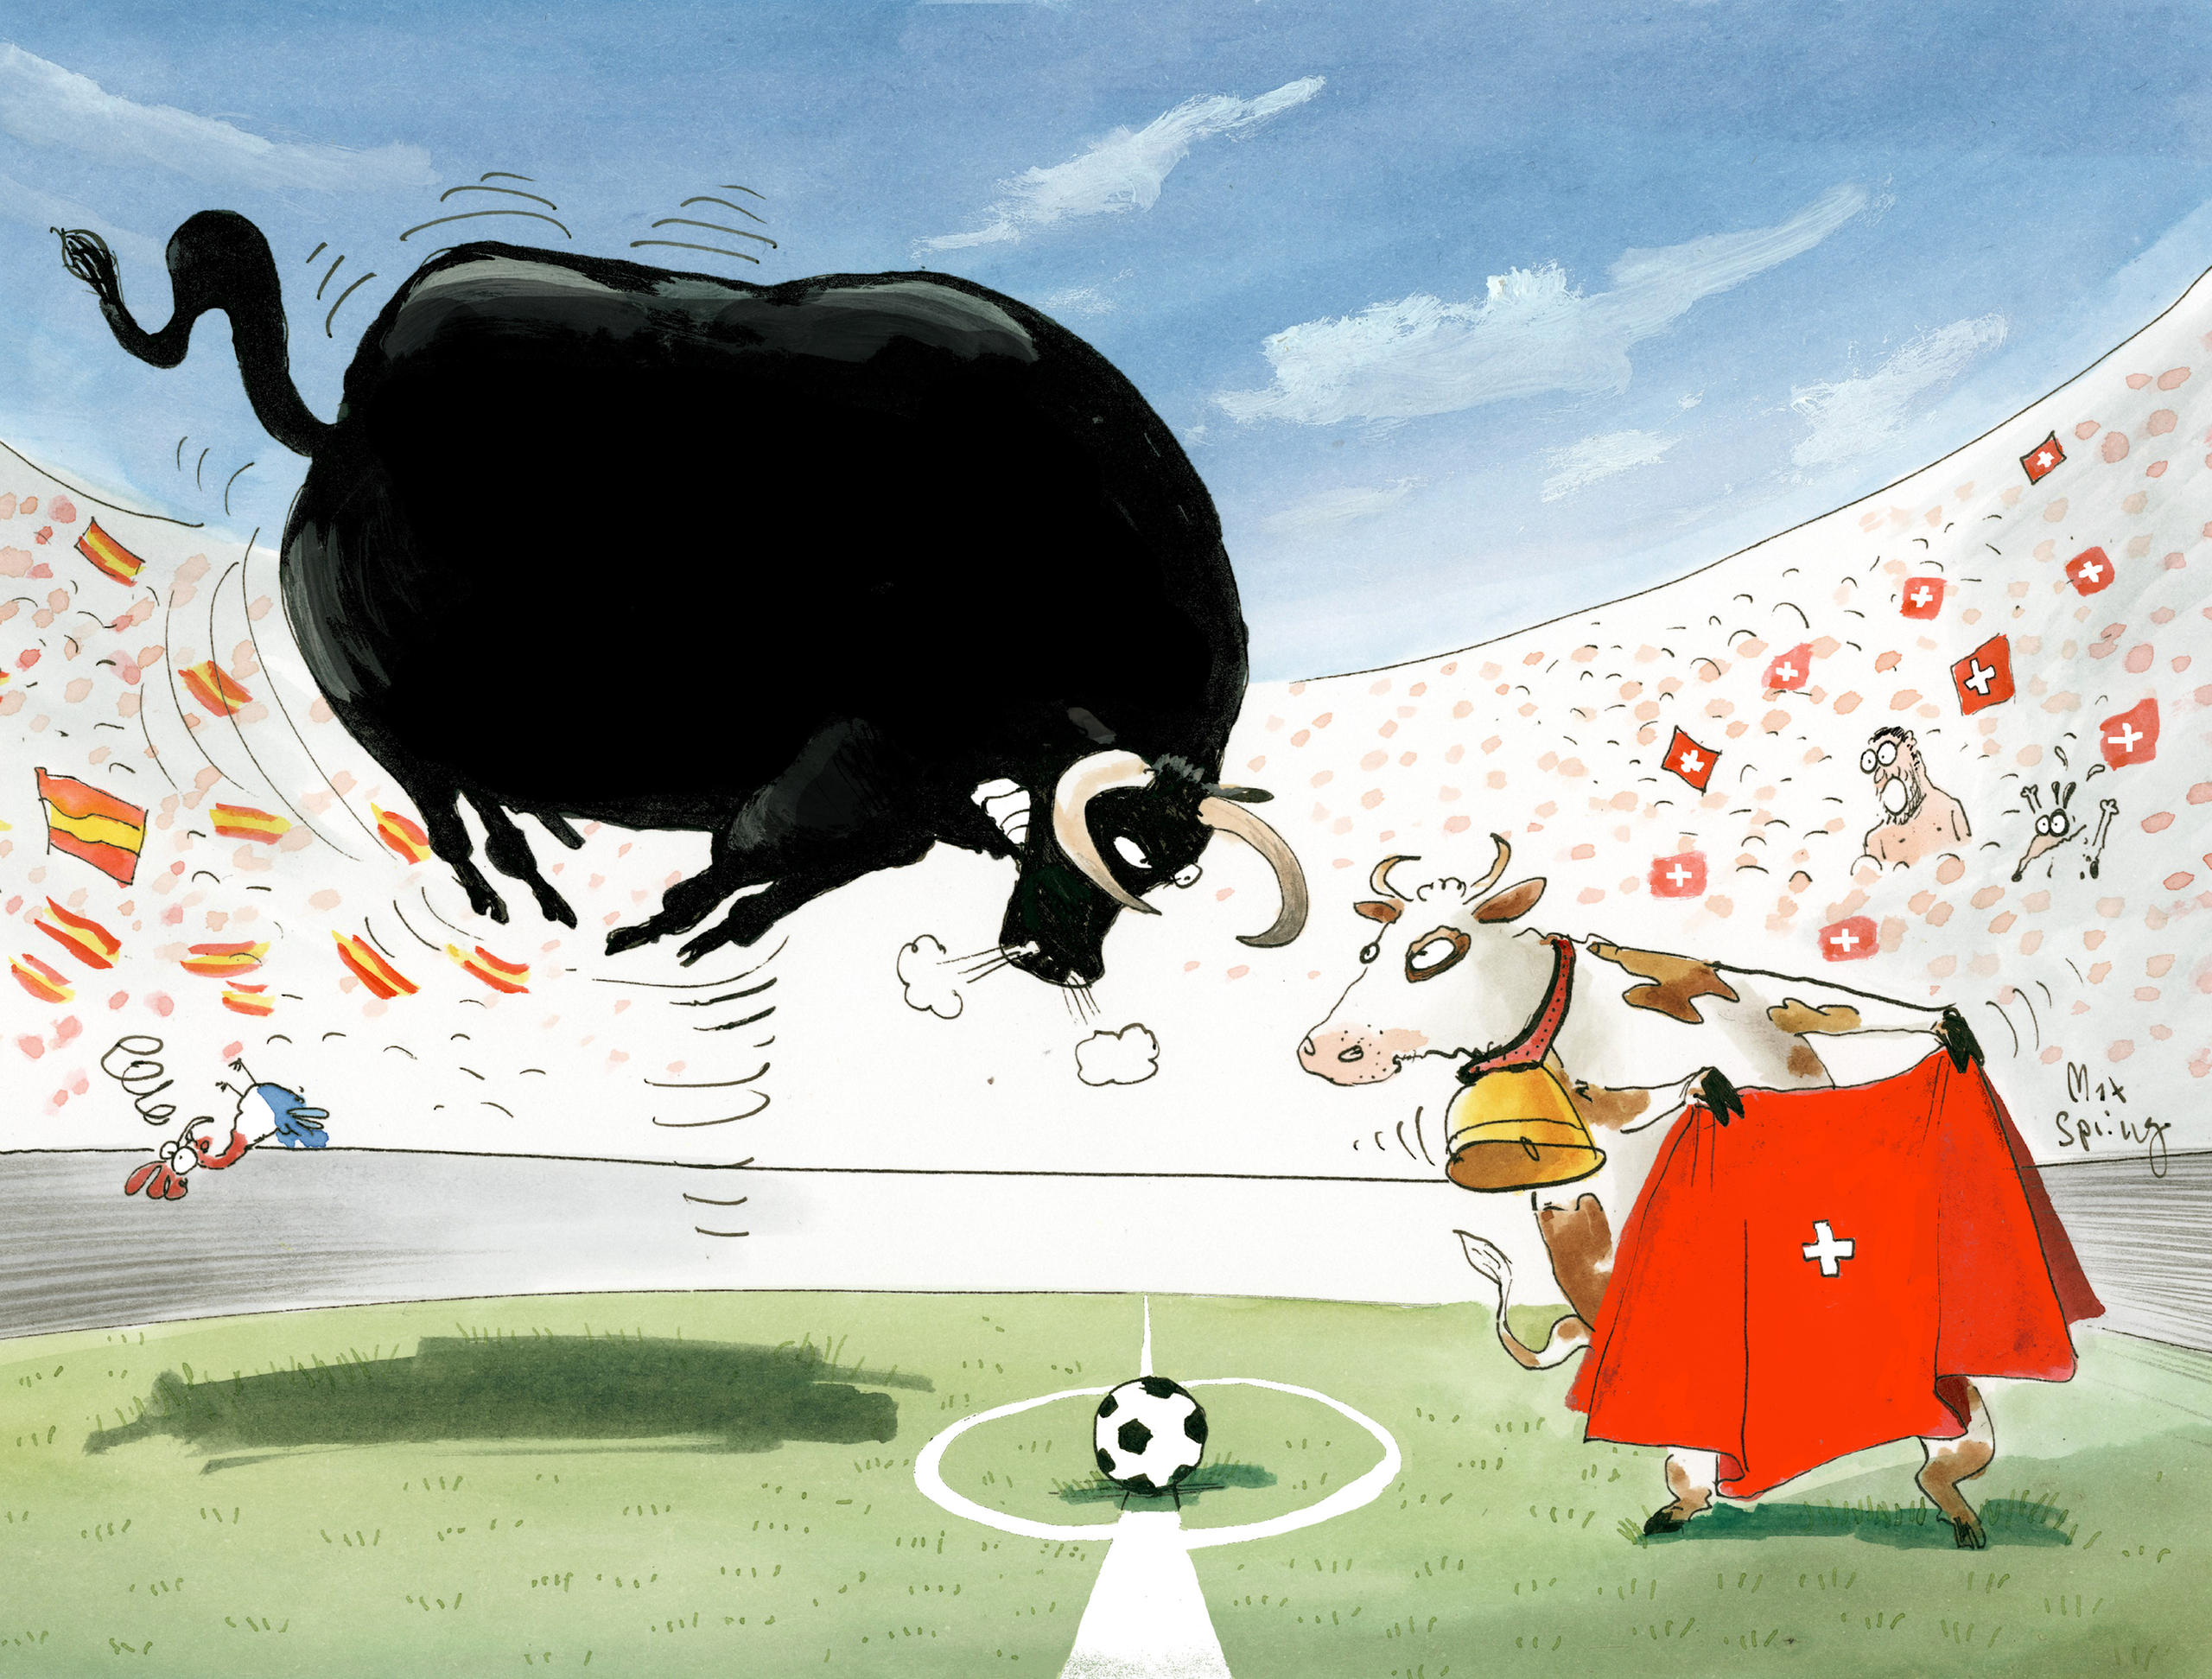 Fútbol: Toro contra vaca suiza